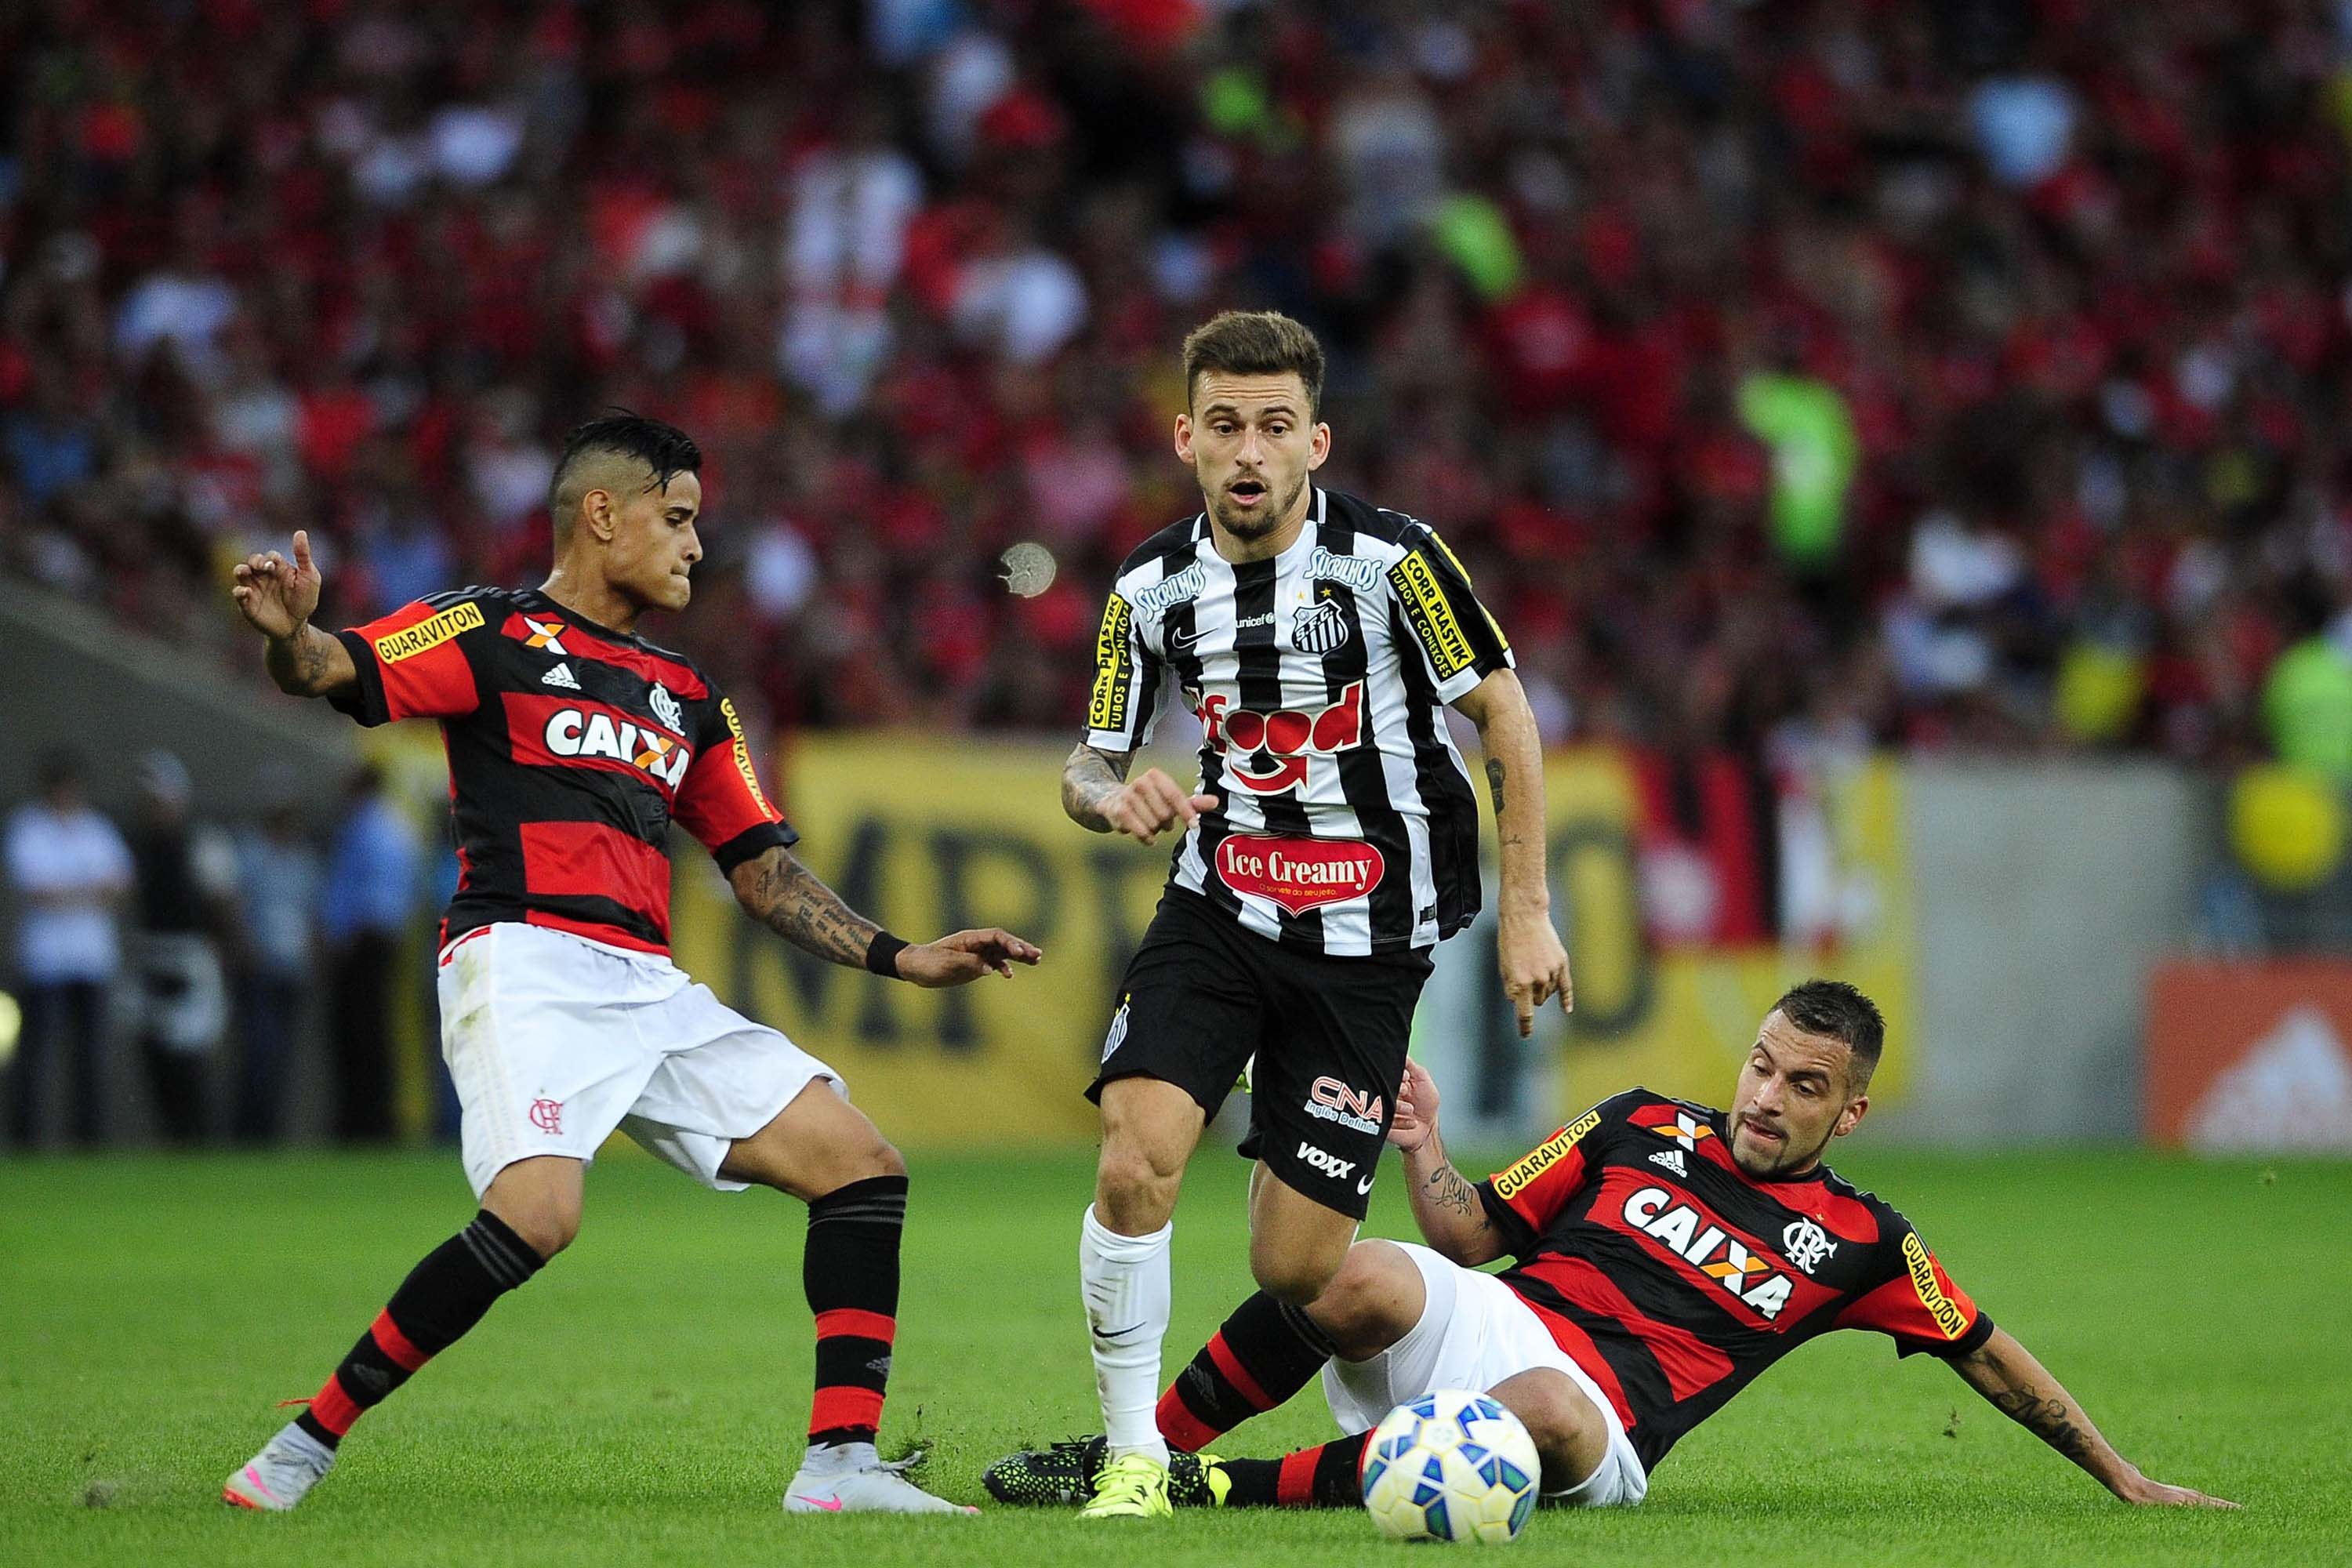 Santos FC on X: O próximo jogo do Santos é contra o Flamengo, nesse  sábado, pelo #Brasileirão!  / X